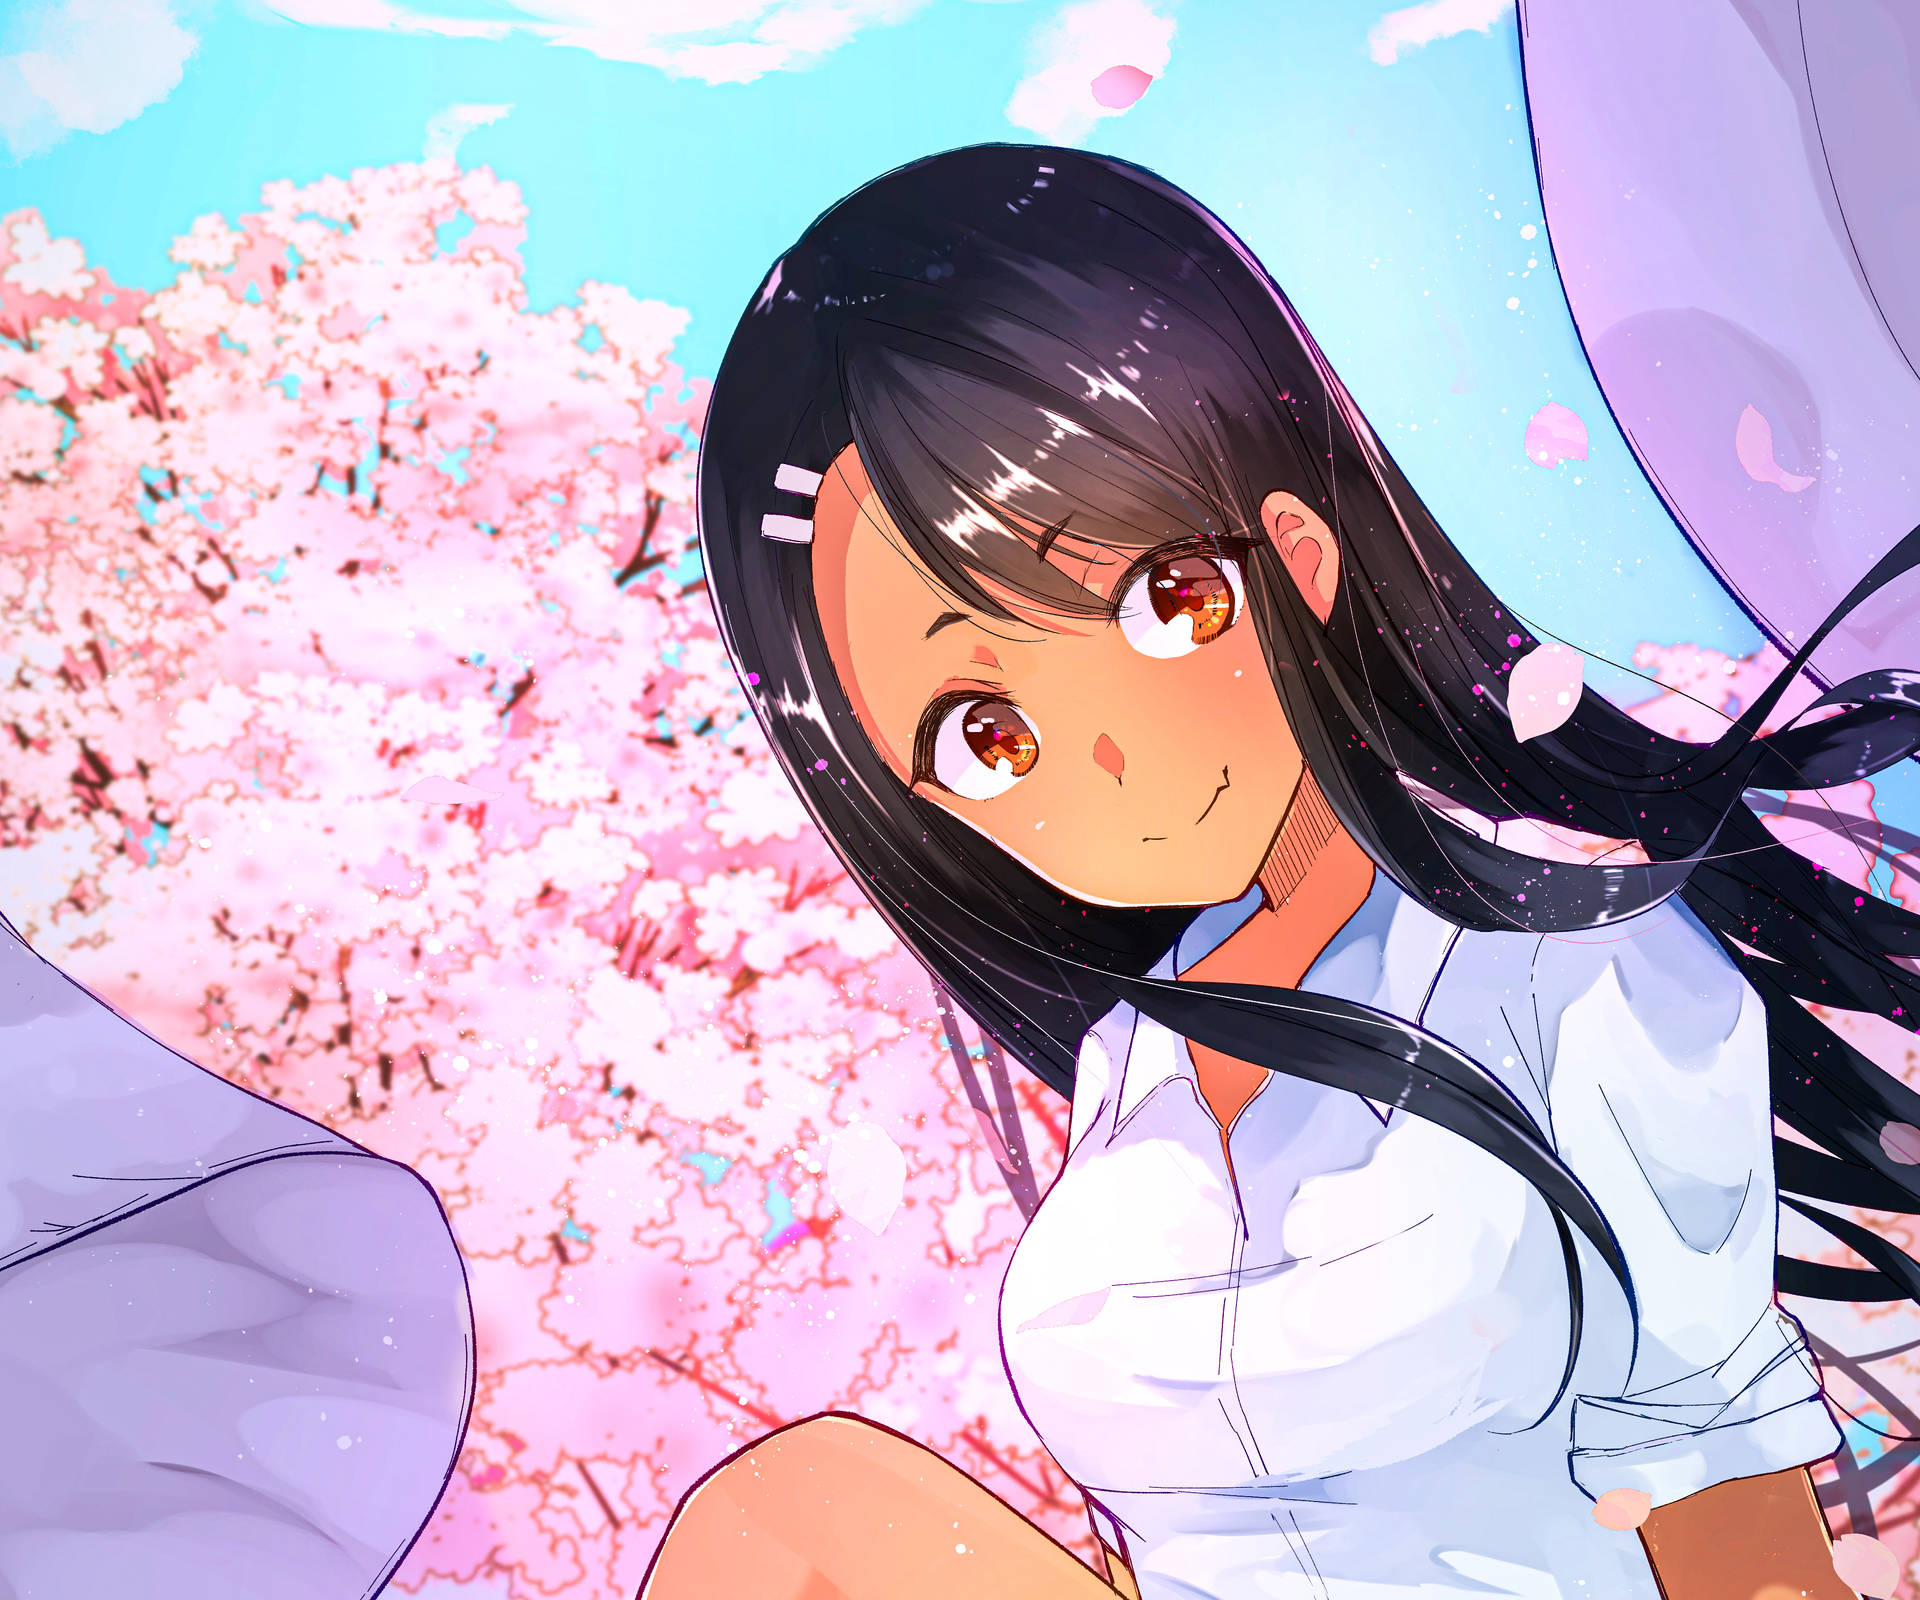 Nagatoro Beside Cherry Blossom Tree Background